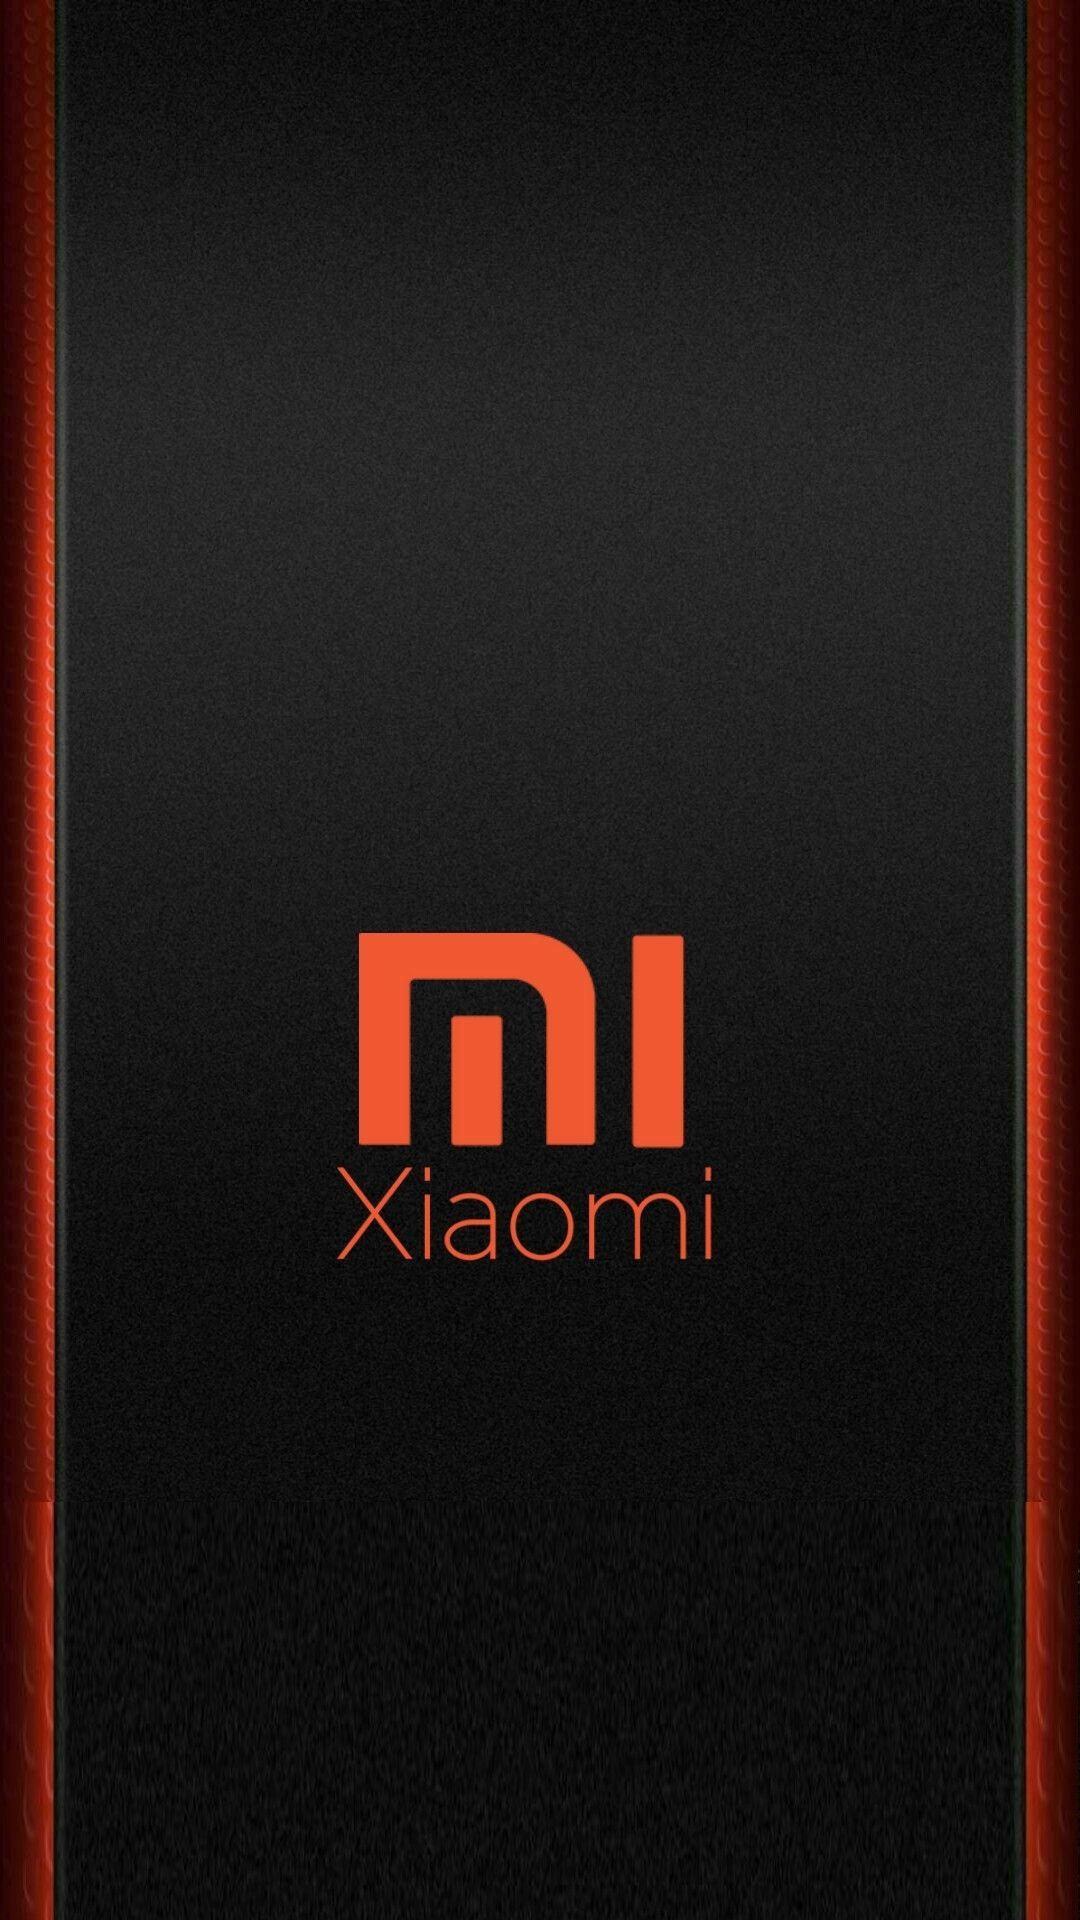 Hãy phô diễn phong cách thể hiện đẳng cấp của bạn với hình nền đẹp Redmi logo! Với gam màu đỏ sắc, hình ảnh chữ Redmi độc đáo và nét chữ tinh tế, đây là một lựa chọn hoàn hảo cho những ai yêu thích phong cách đậm chất Xiaomi.